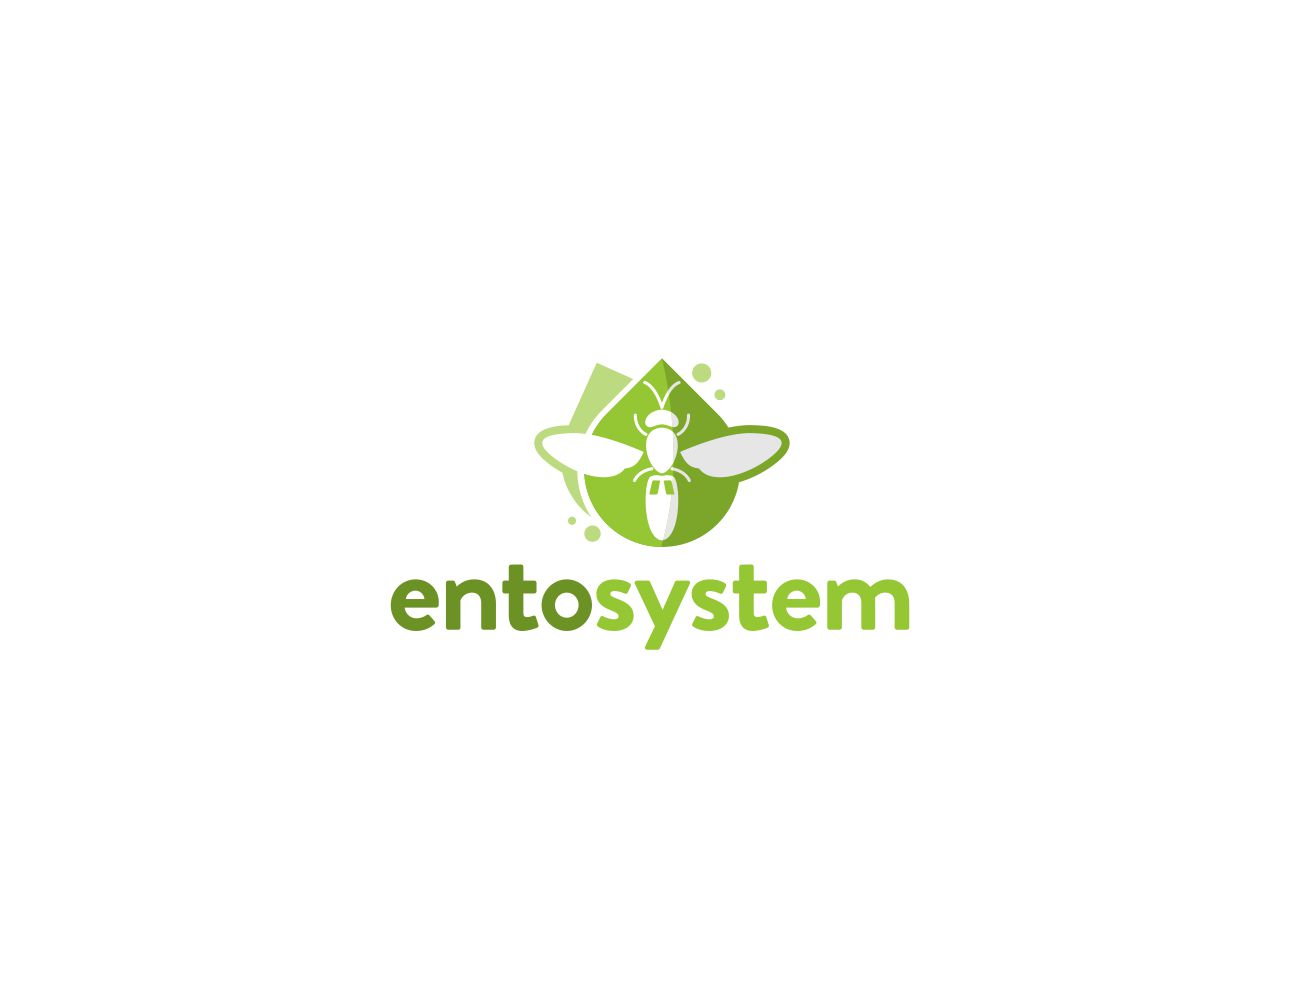 Entosystem